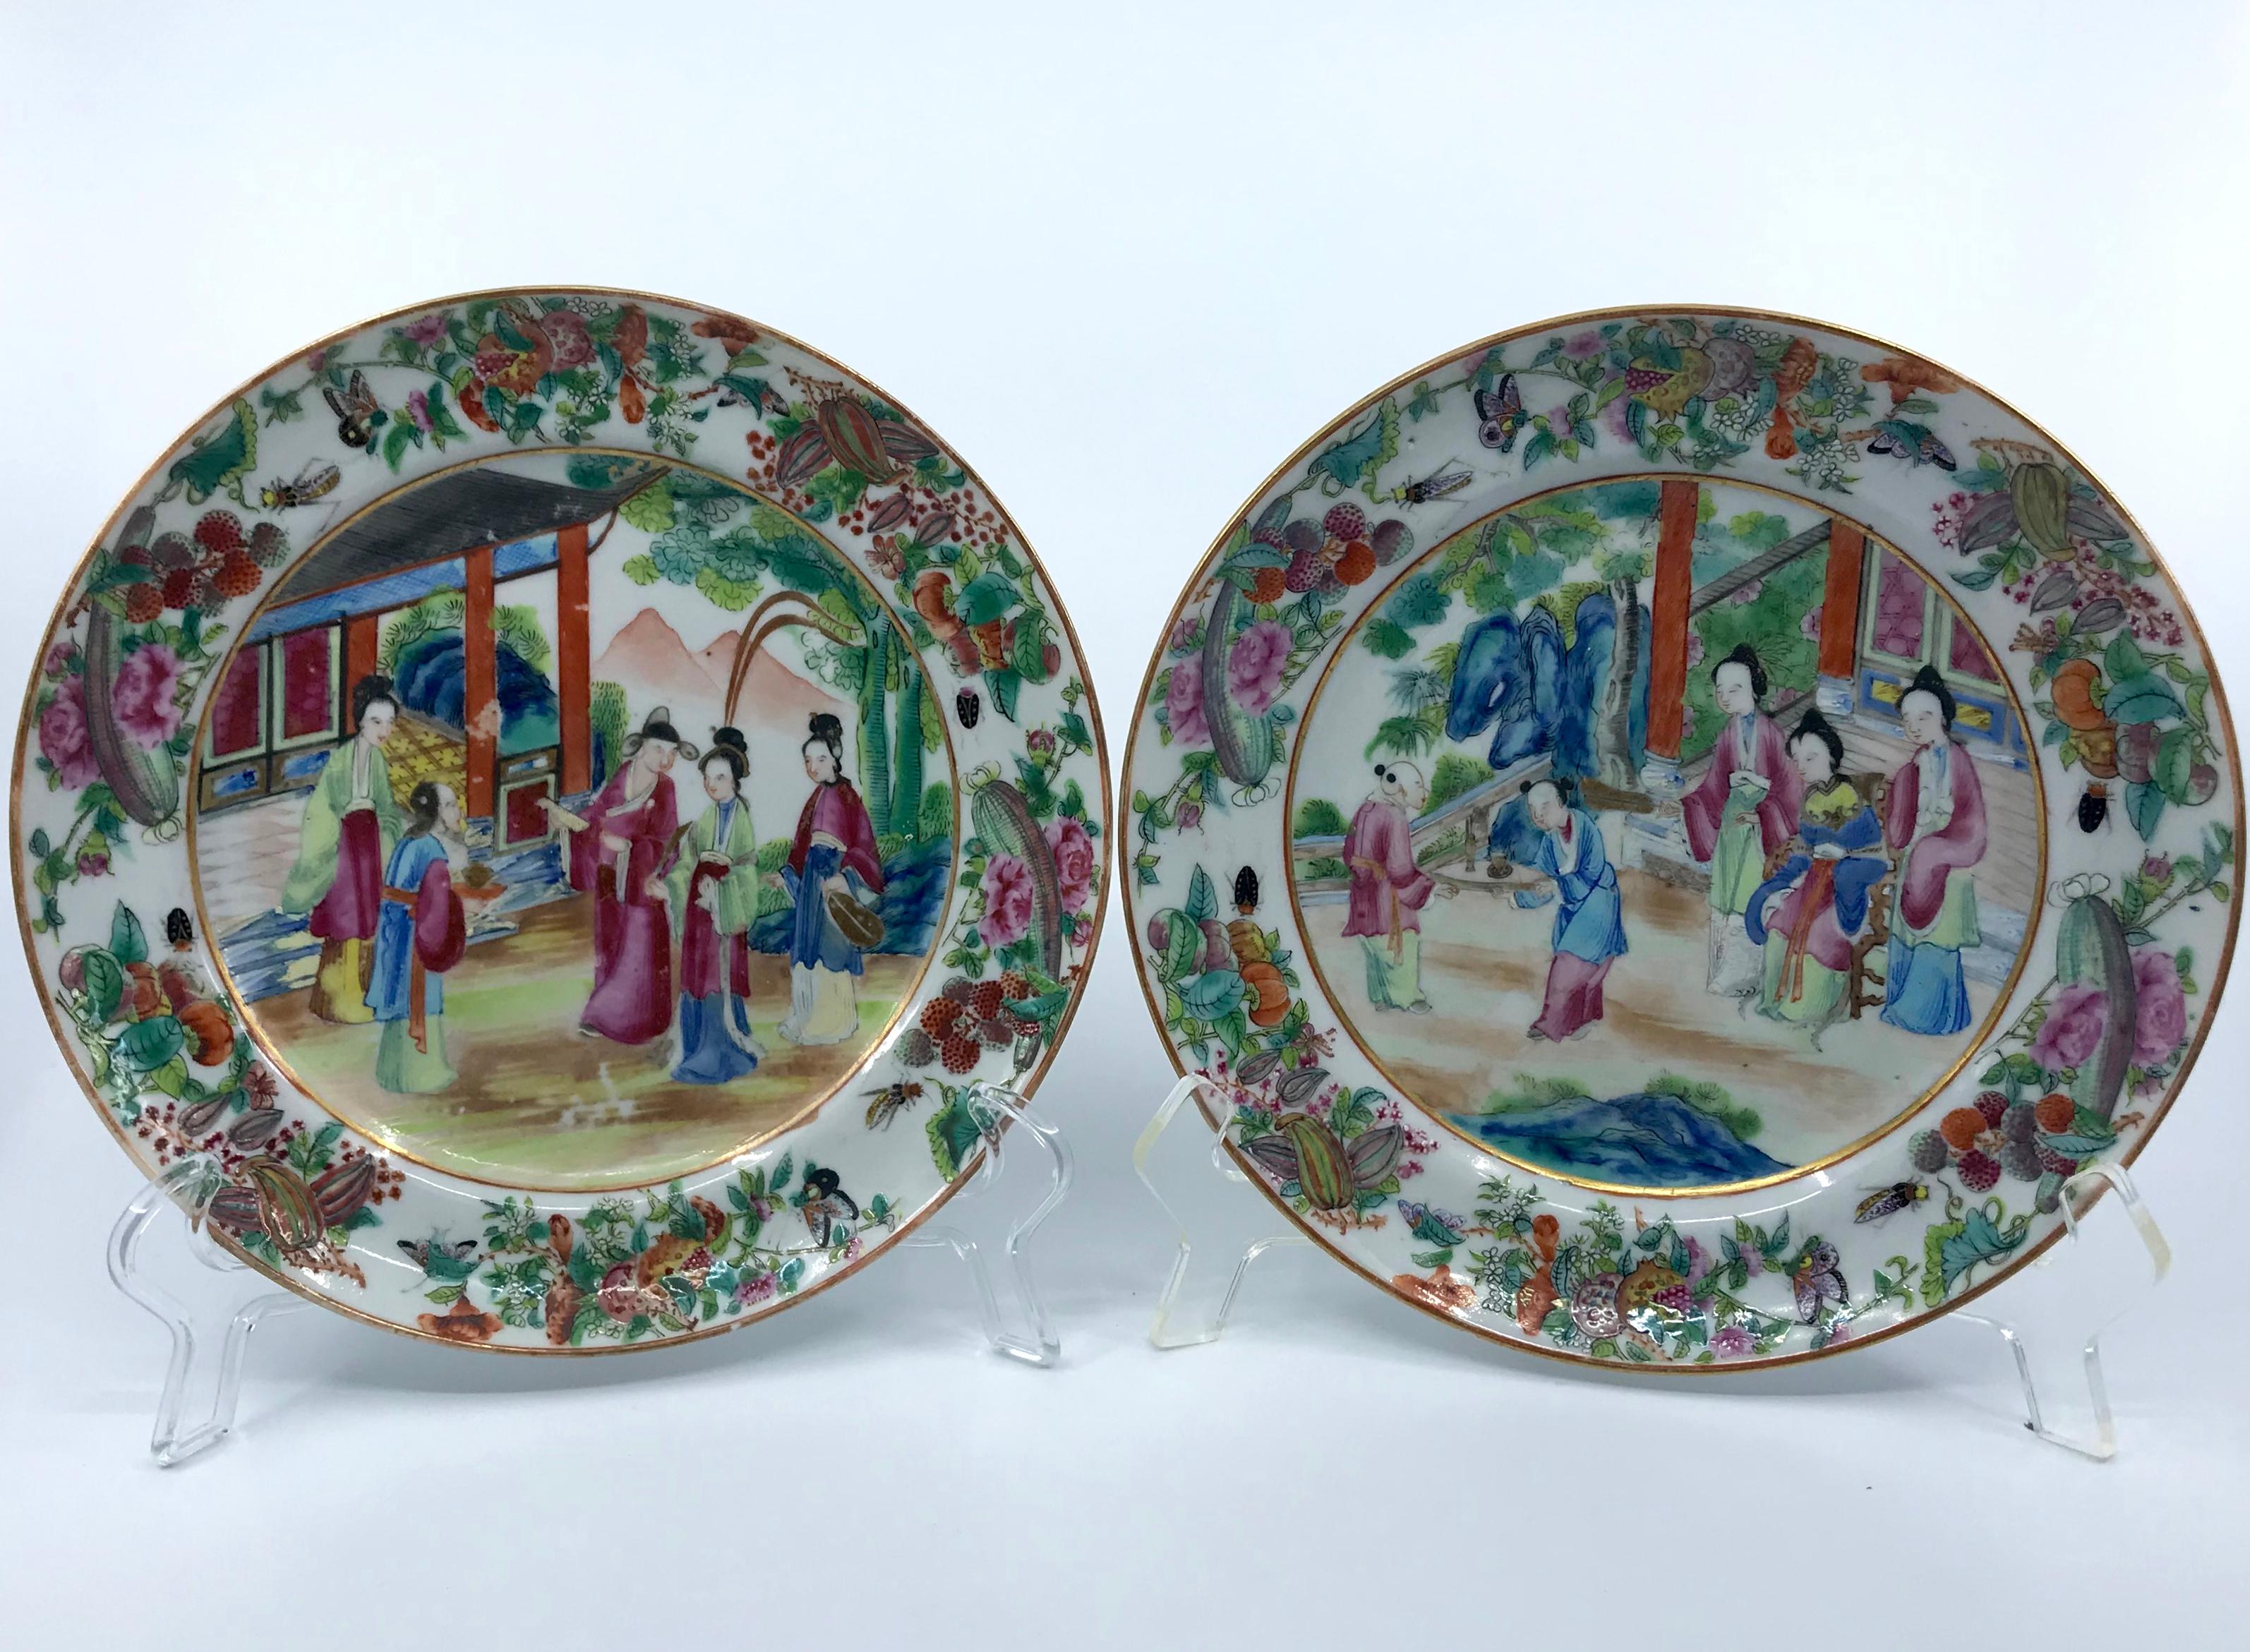 Paar rosafarbene Teller aus chinesischem Mandarin-Porzellan. Lebendig gefärbte und vergoldete chinesische Export-Mittelteller in Rosa, Blau- und Grüntönen. China, um 1820
Abmessungen: 7,88